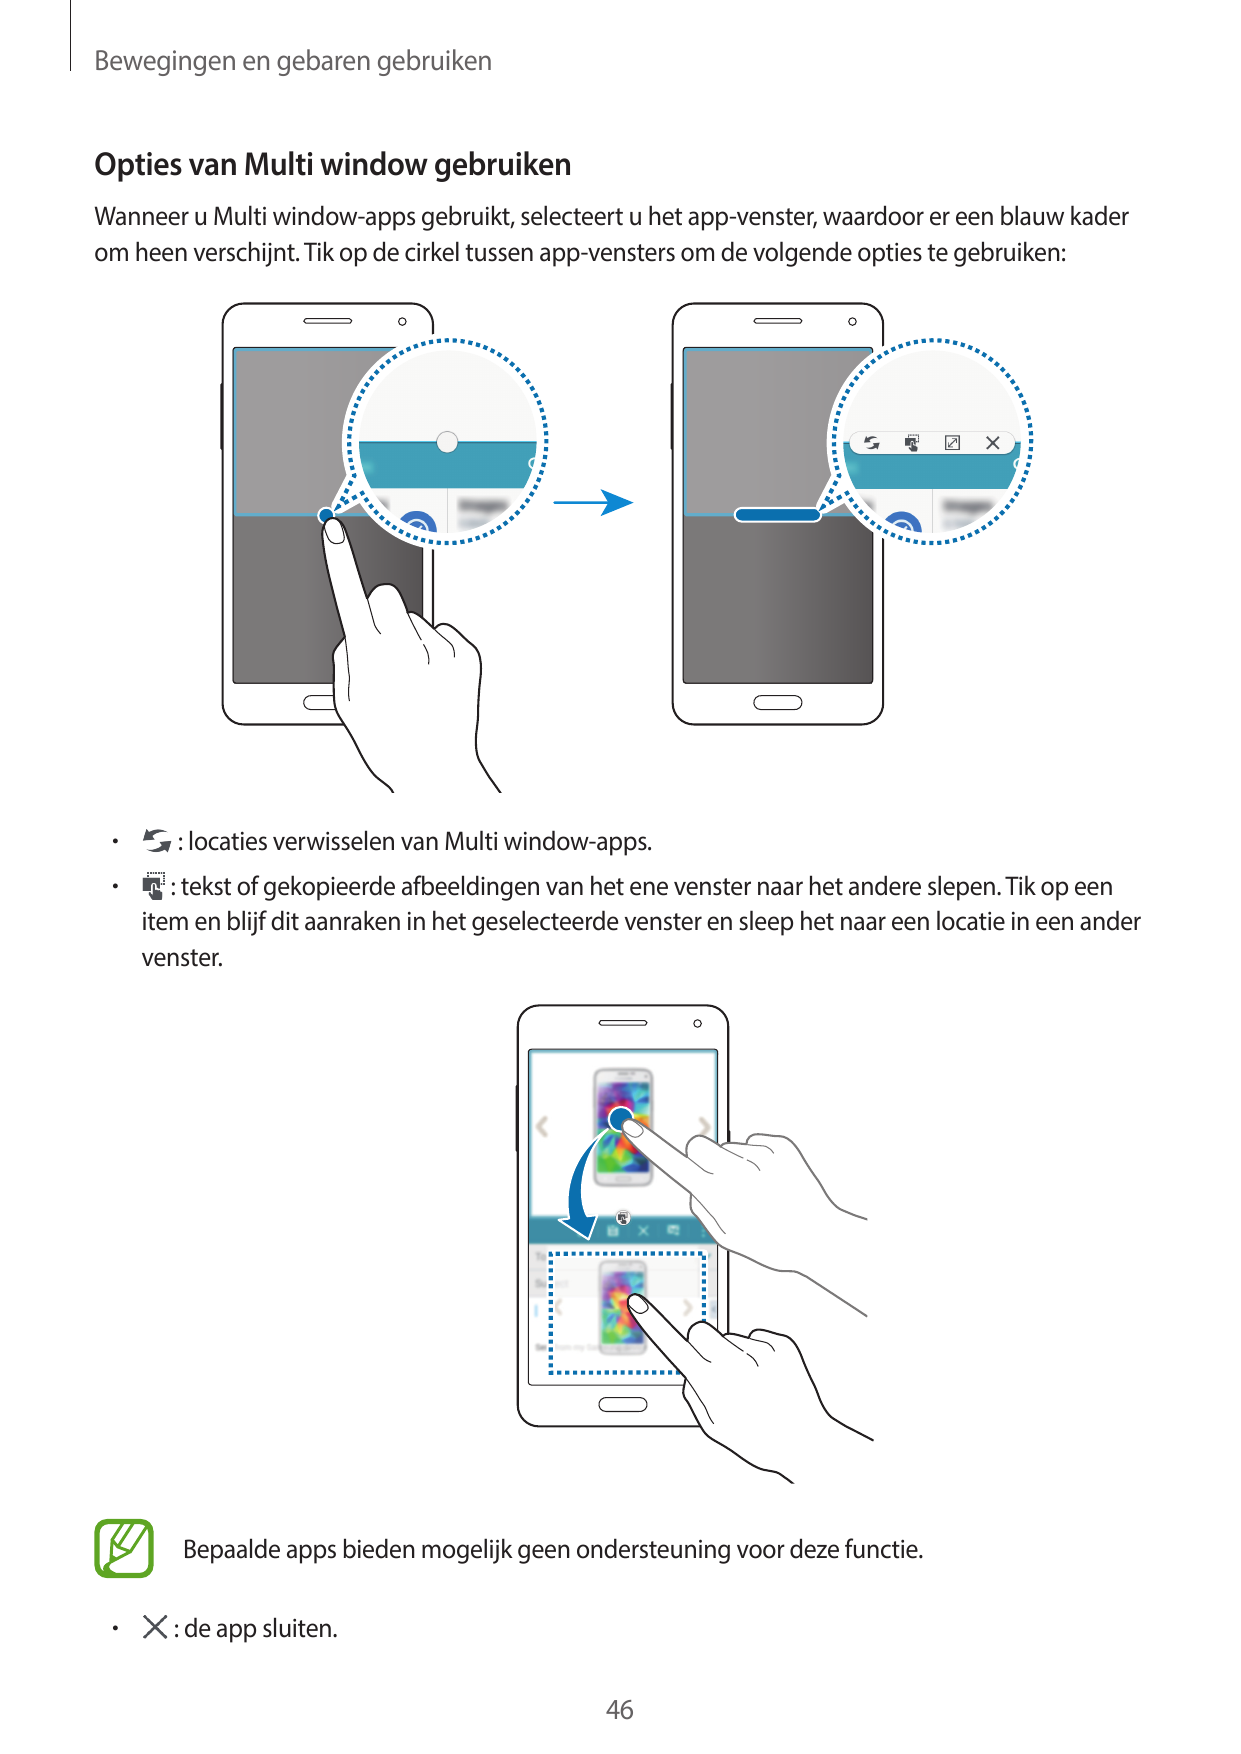 Bewegingen en gebaren gebruikenOpties van Multi window gebruikenWanneer u Multi window-apps gebruikt, selecteert u het app-venst